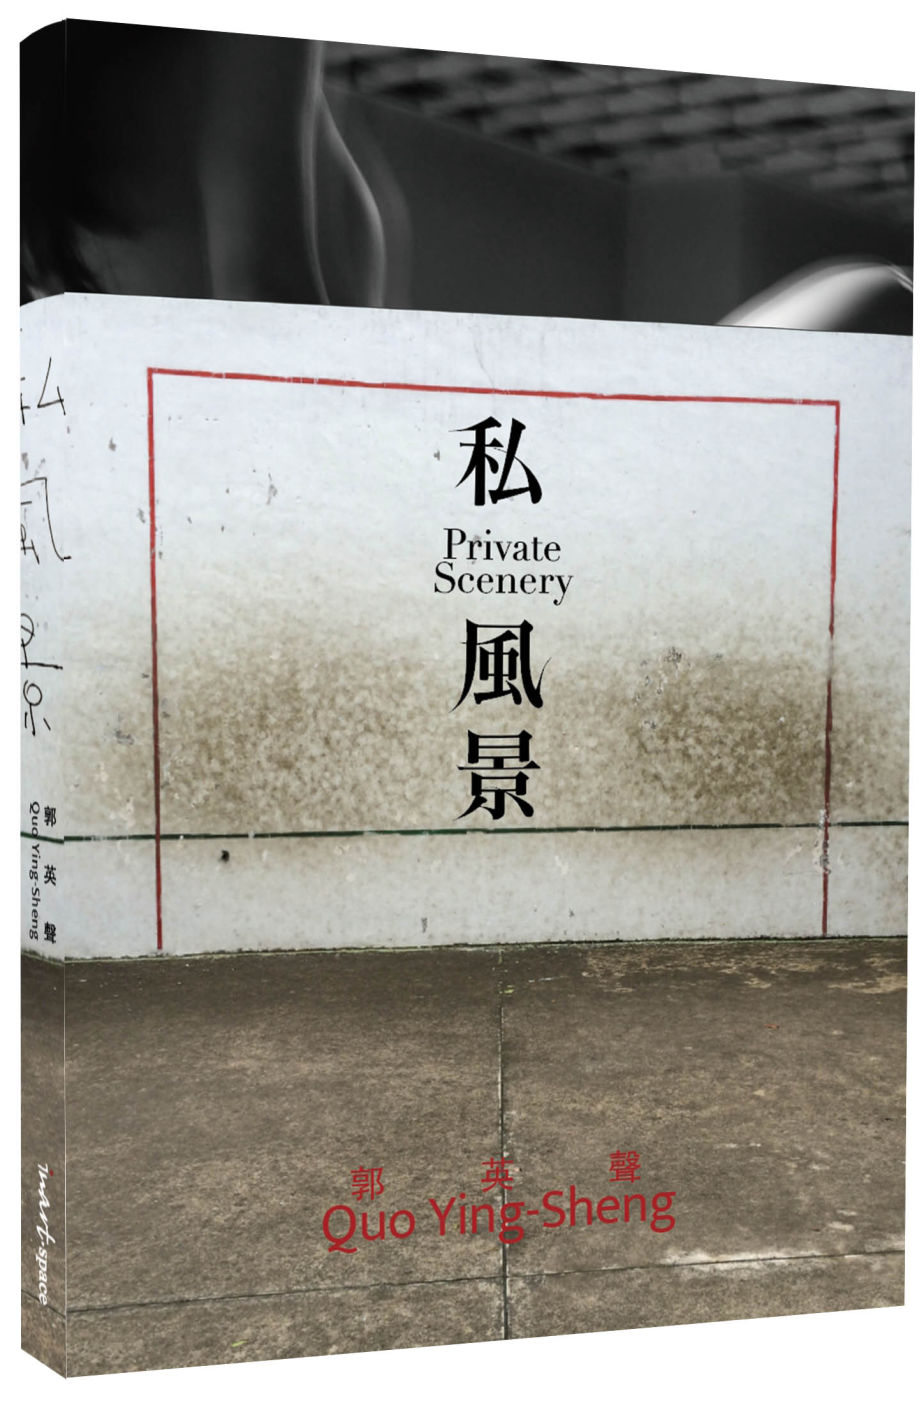 郭英聲 私風景 QUO YING SHENG: PRIVAT...